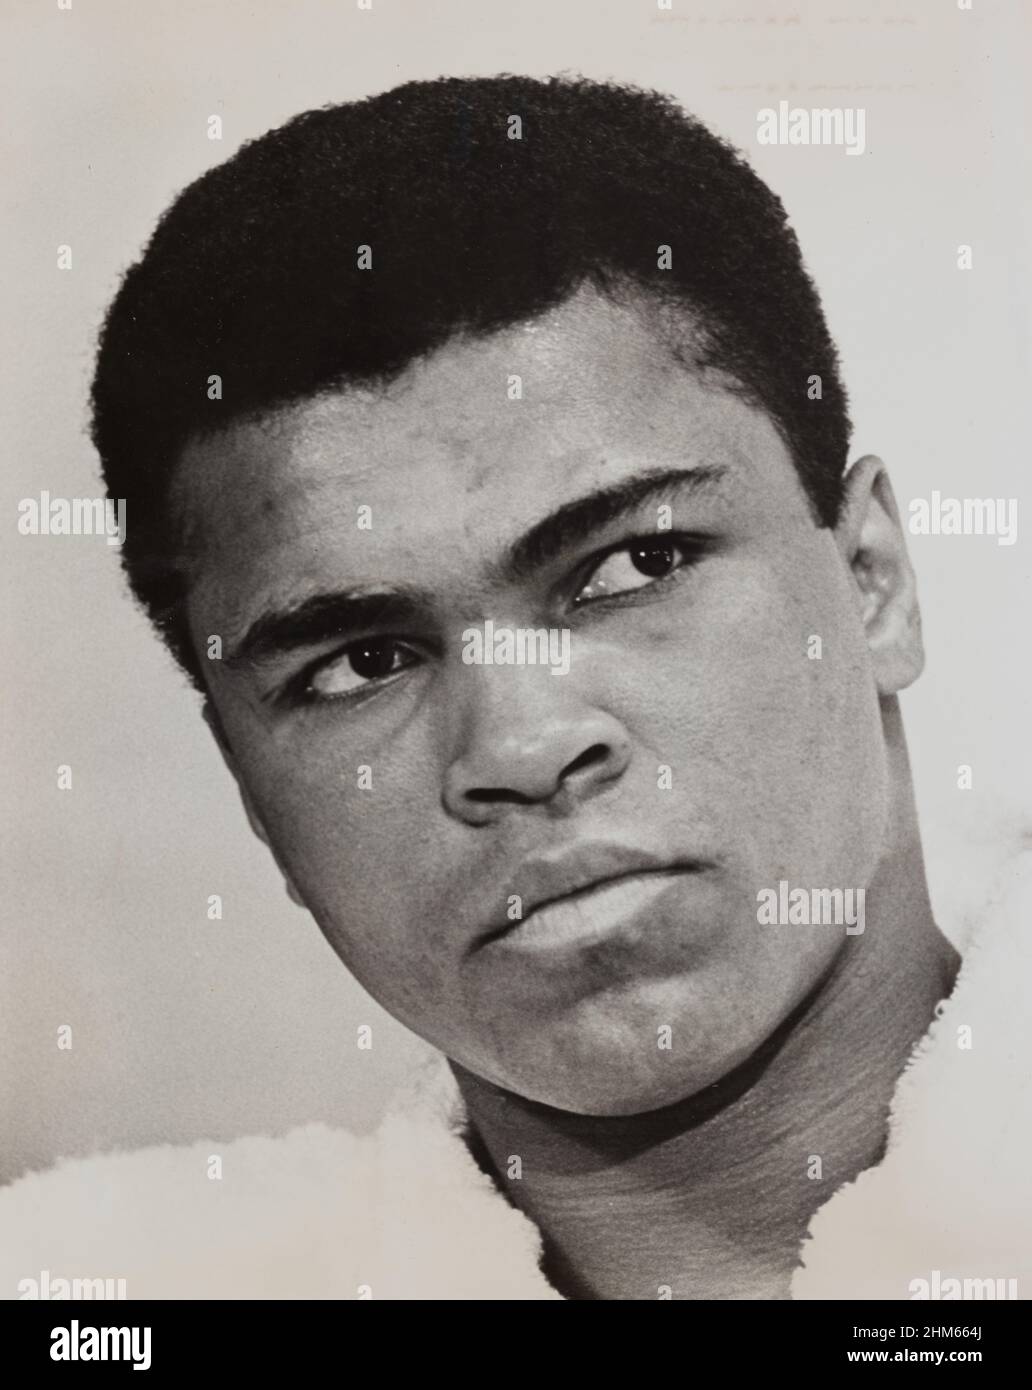 Pugile campione del mondo Muhammad Ali / Cassius Clay, 1967, ritratto busto, Rosenberg, ira, 1916-2016, fotografo Foto Stock